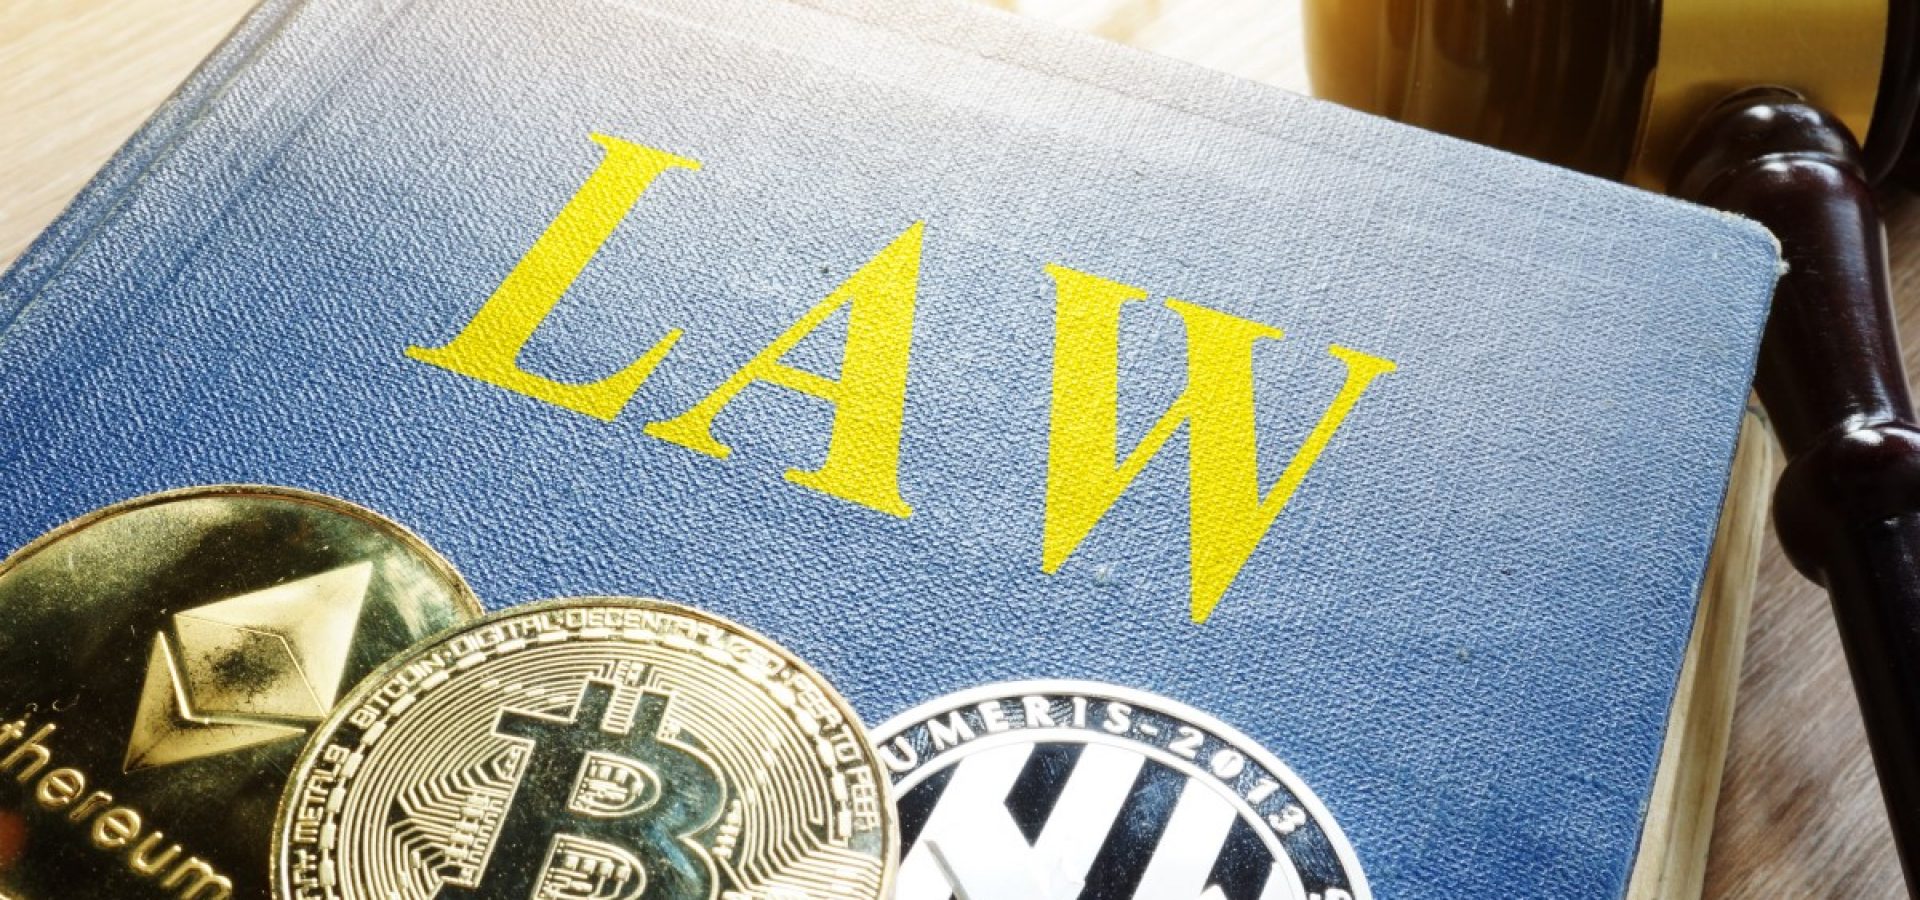 Bitcoin and crypto crimes